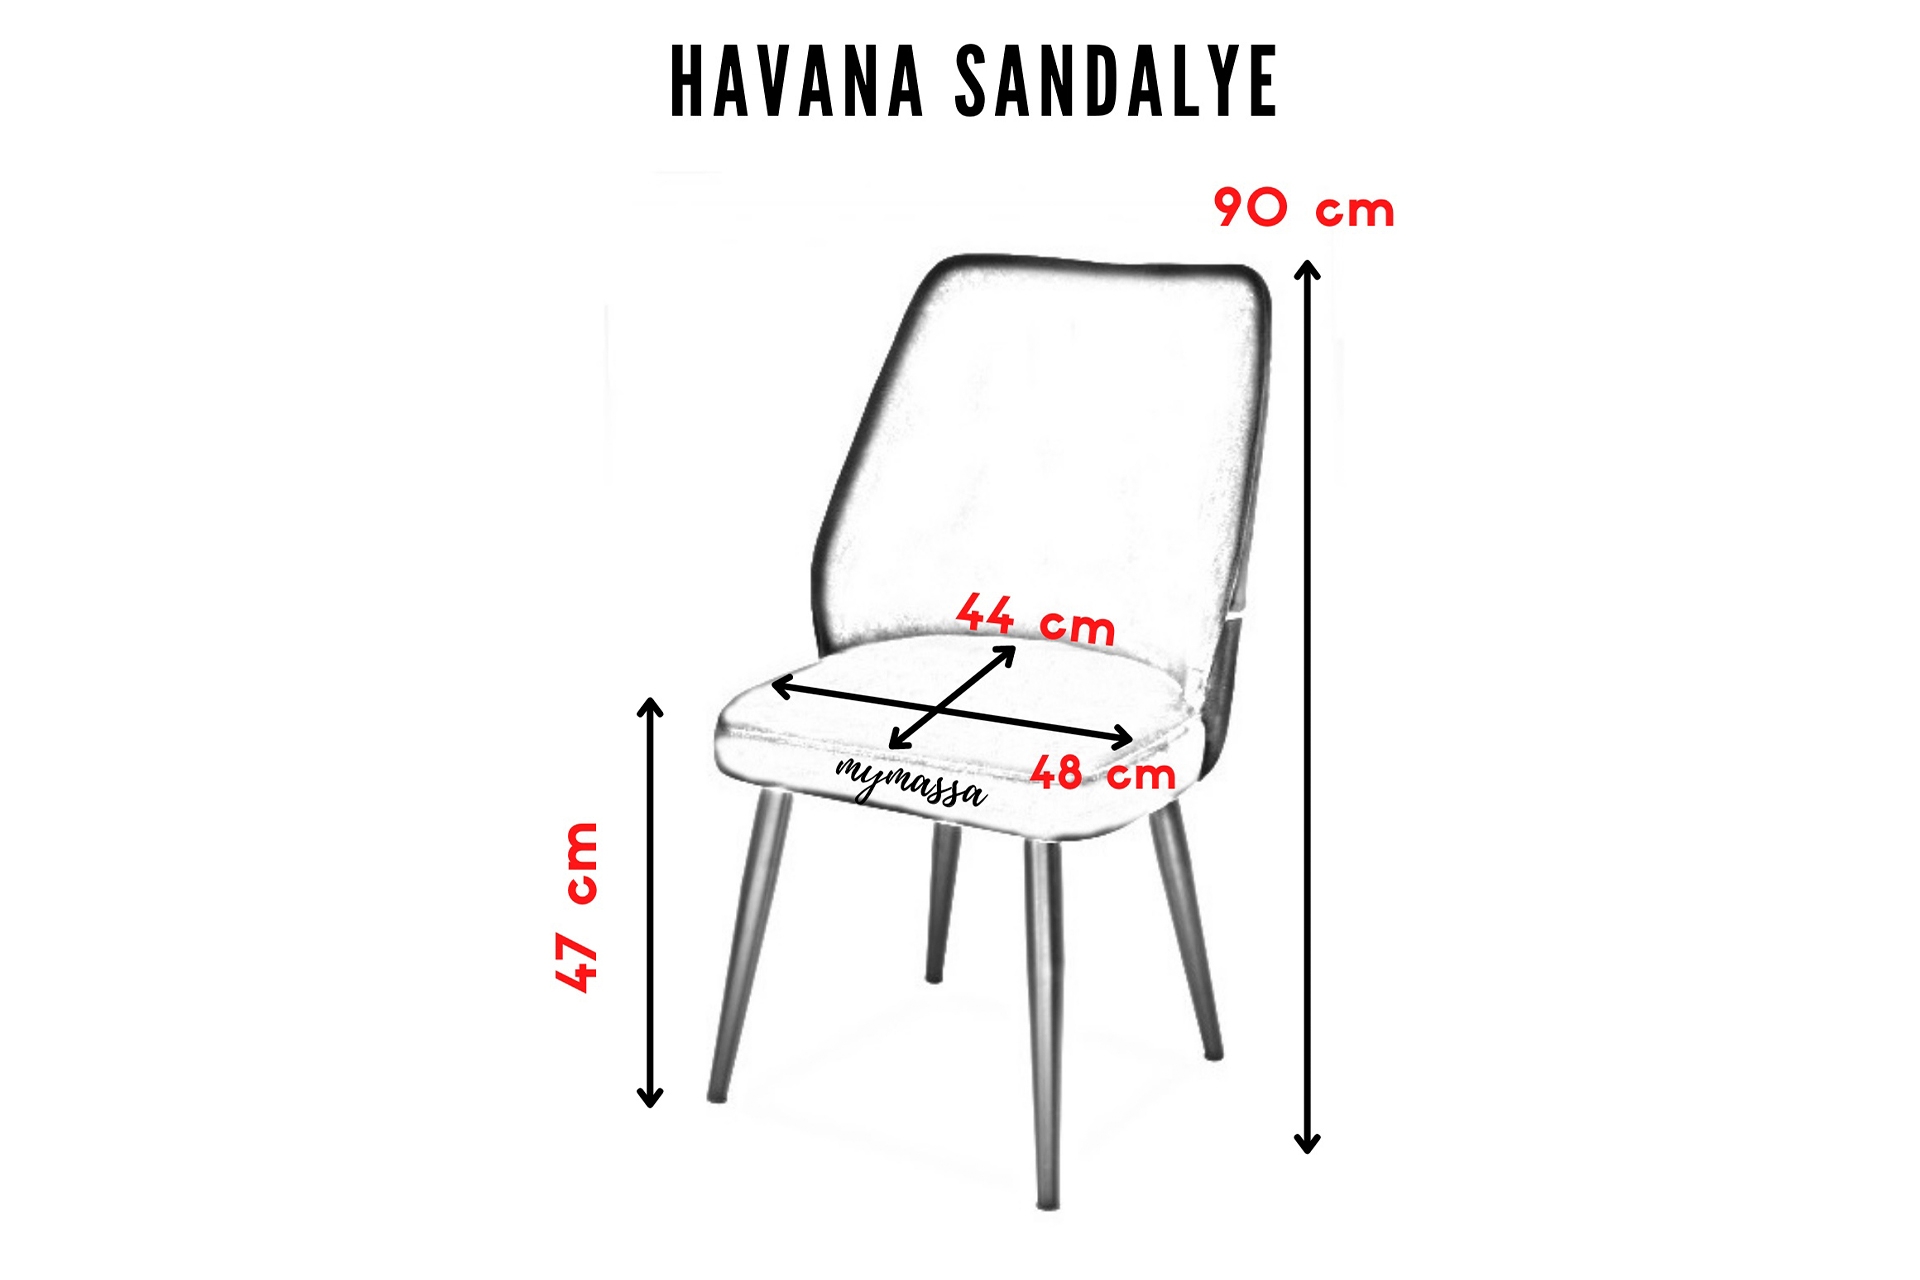 BABYFACE HAVANA SANDALYE - KREM